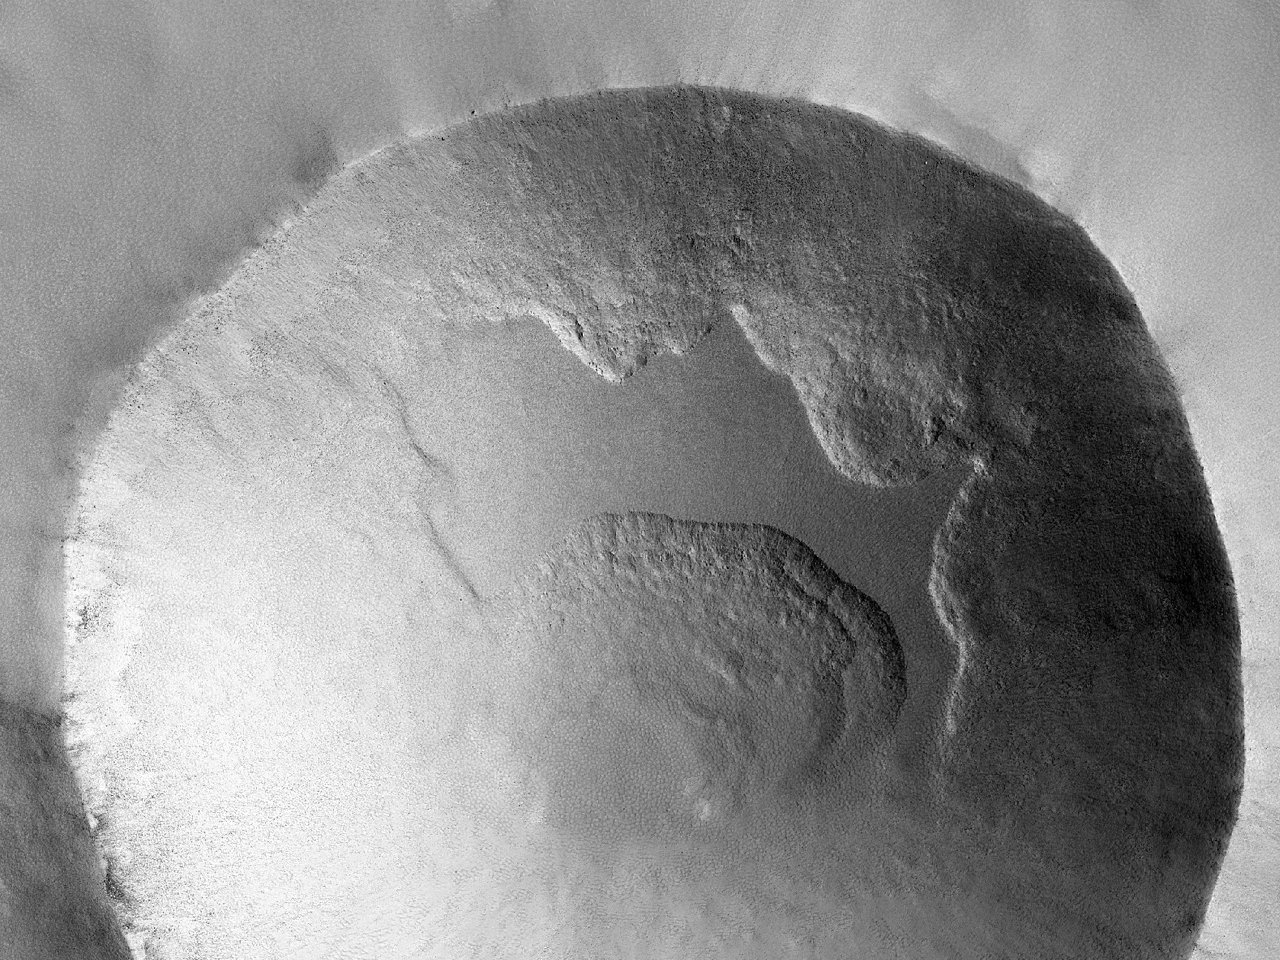 Crater valde acclivibus parietibus conspicuus